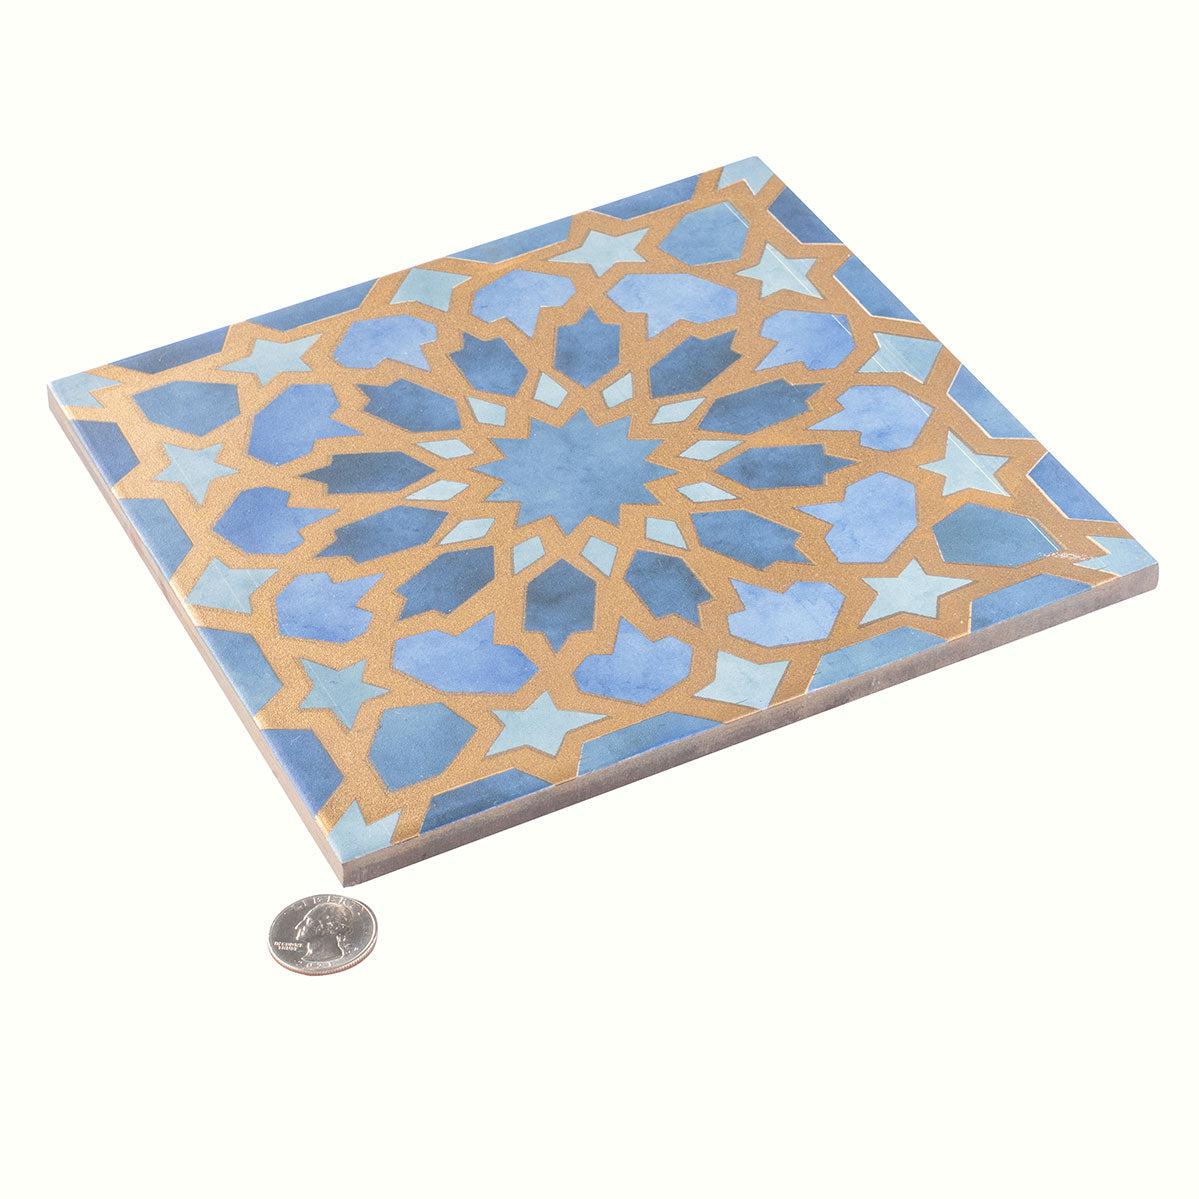 Amira Regal Samarkand Blue and Gold Patterned Porcelain Tile